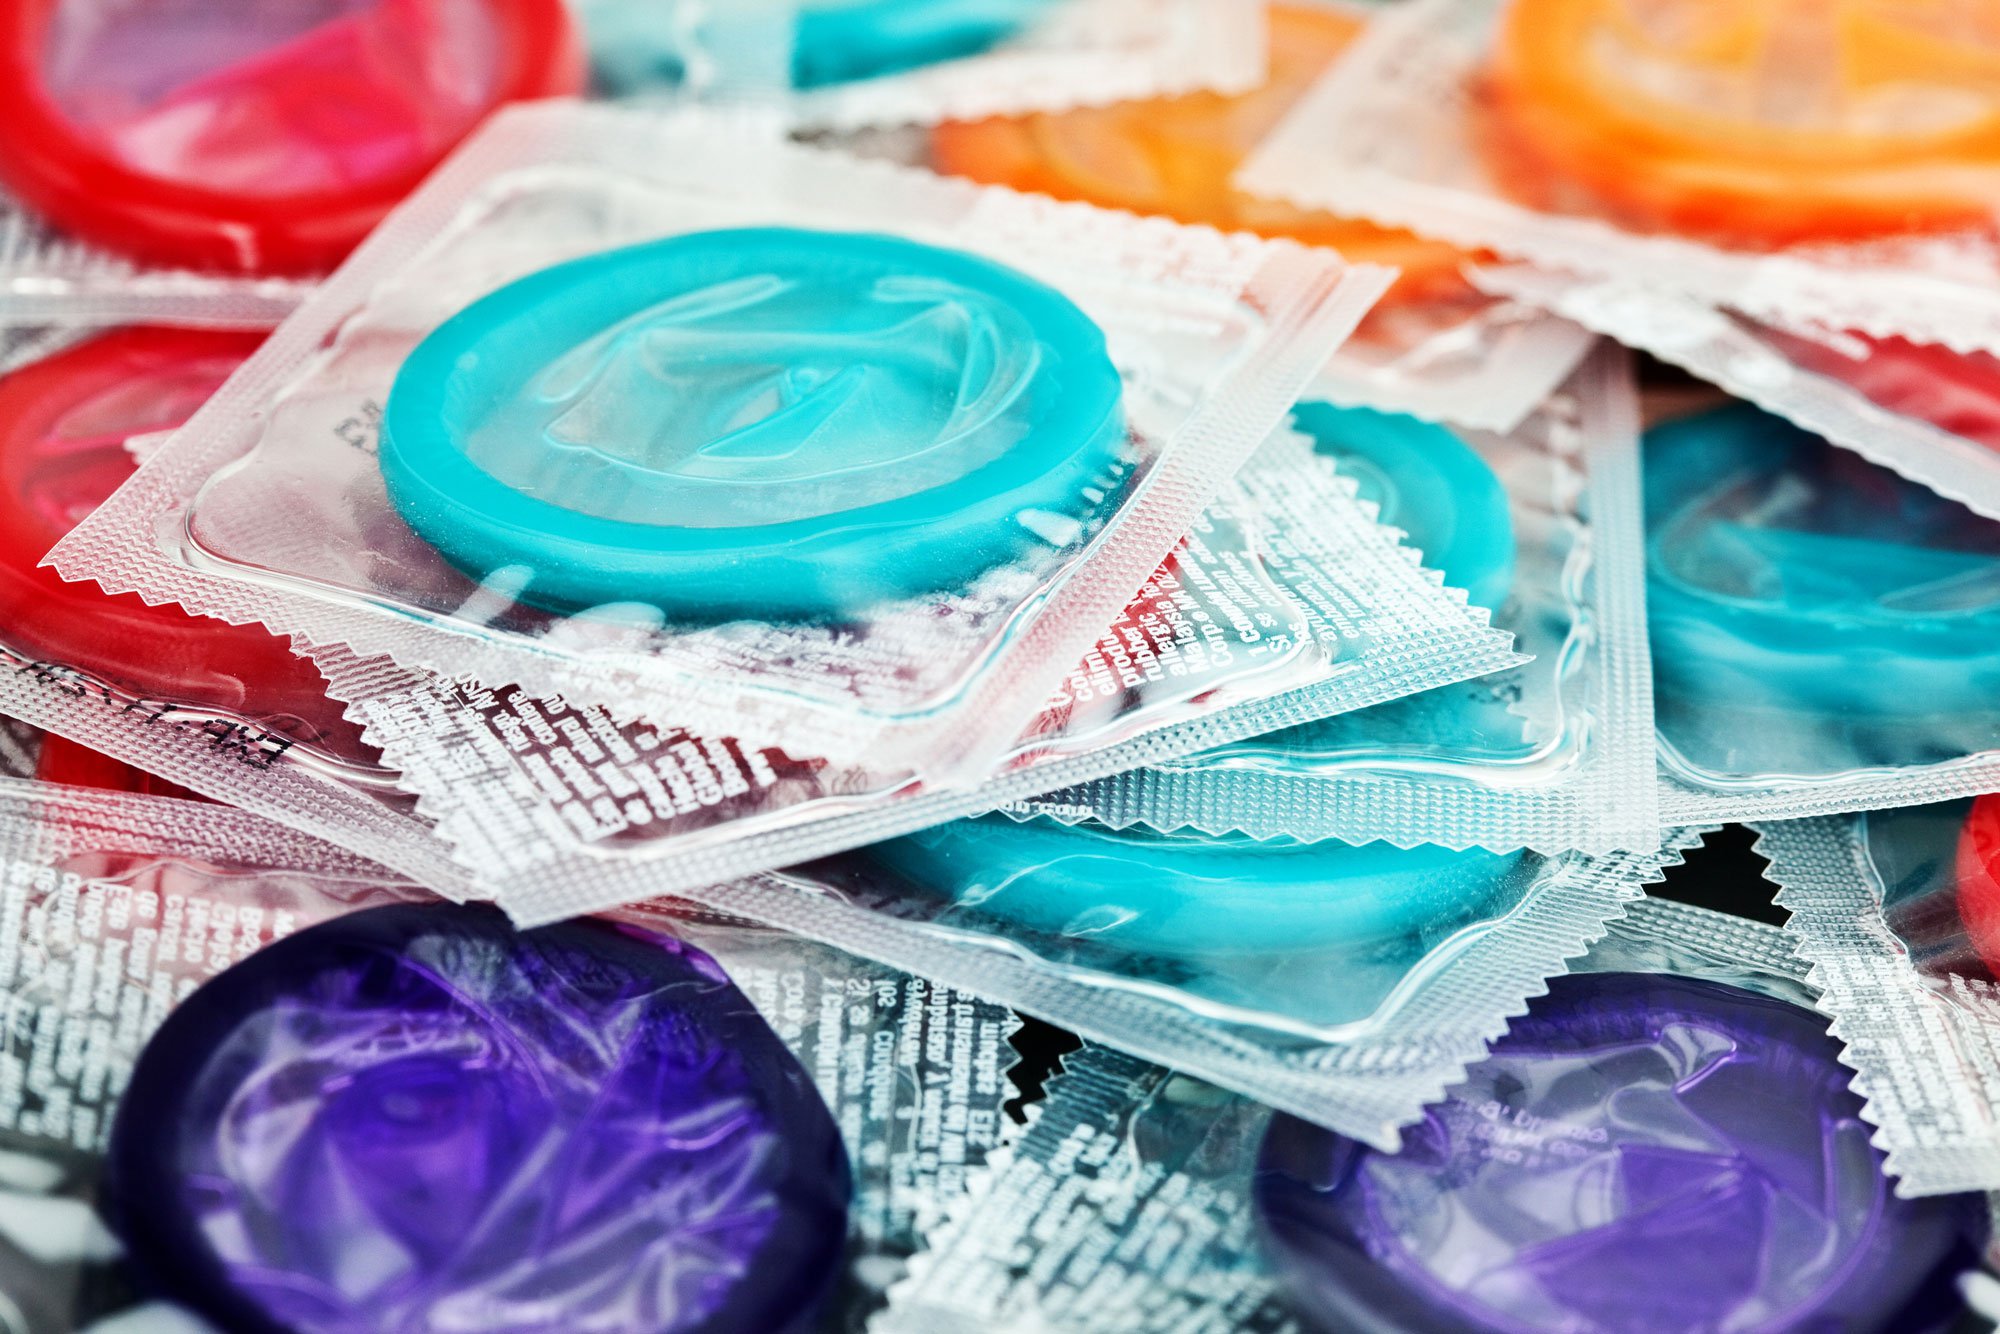 Trojan Ultra Thin Condoms - RipNroll